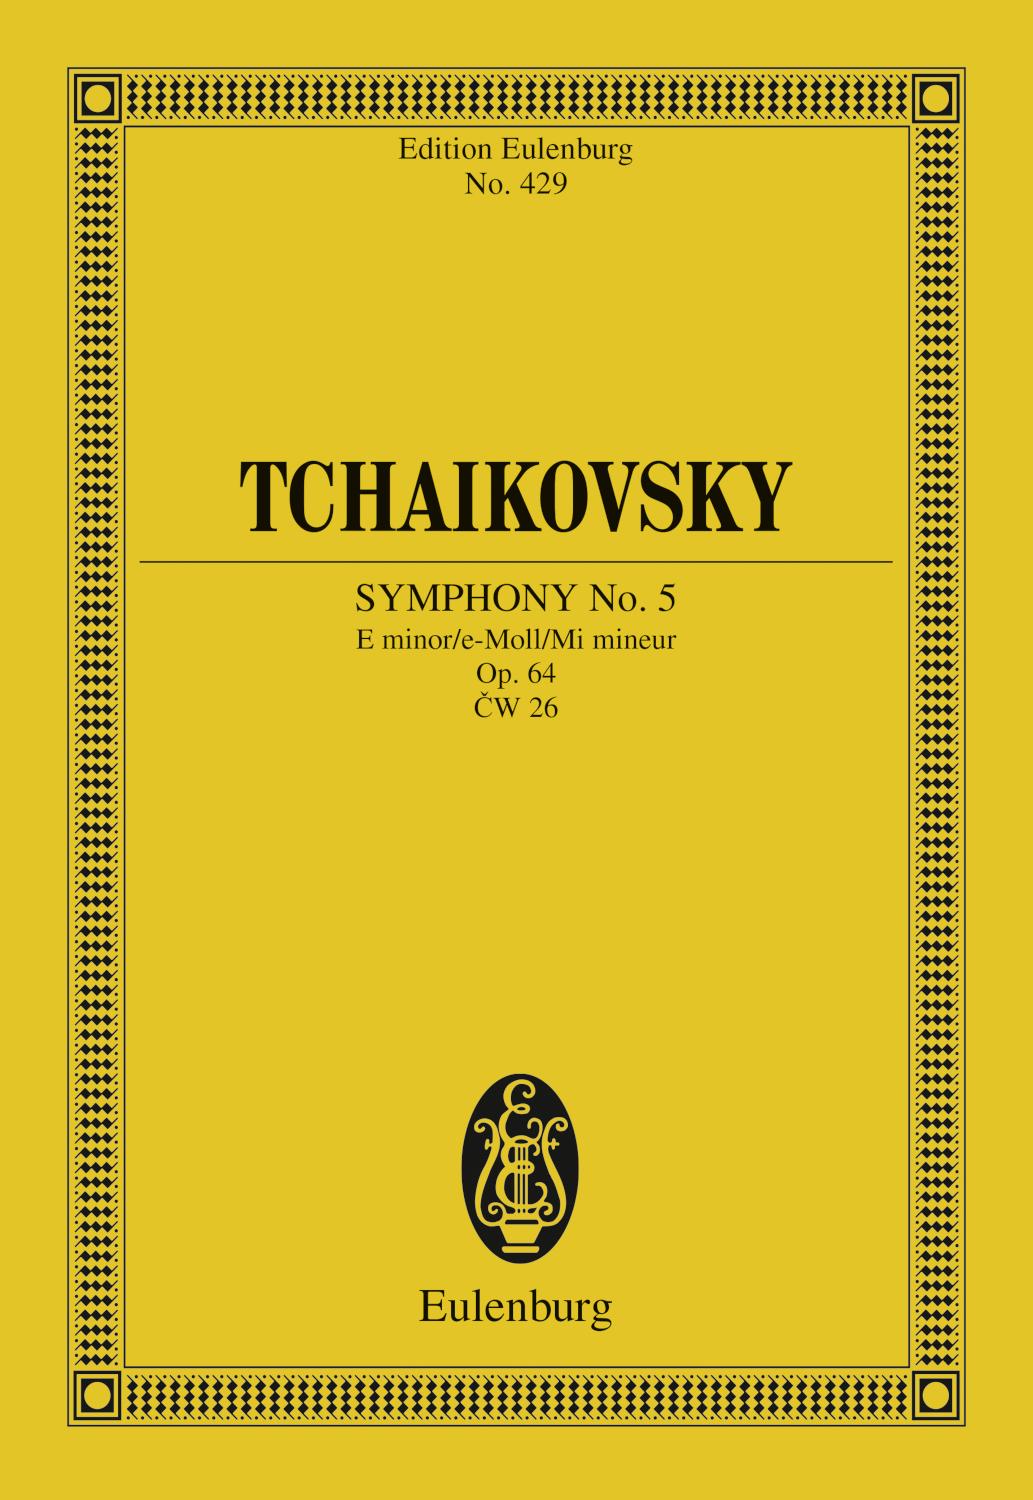 Symphony No. 5 E minor Op. 64